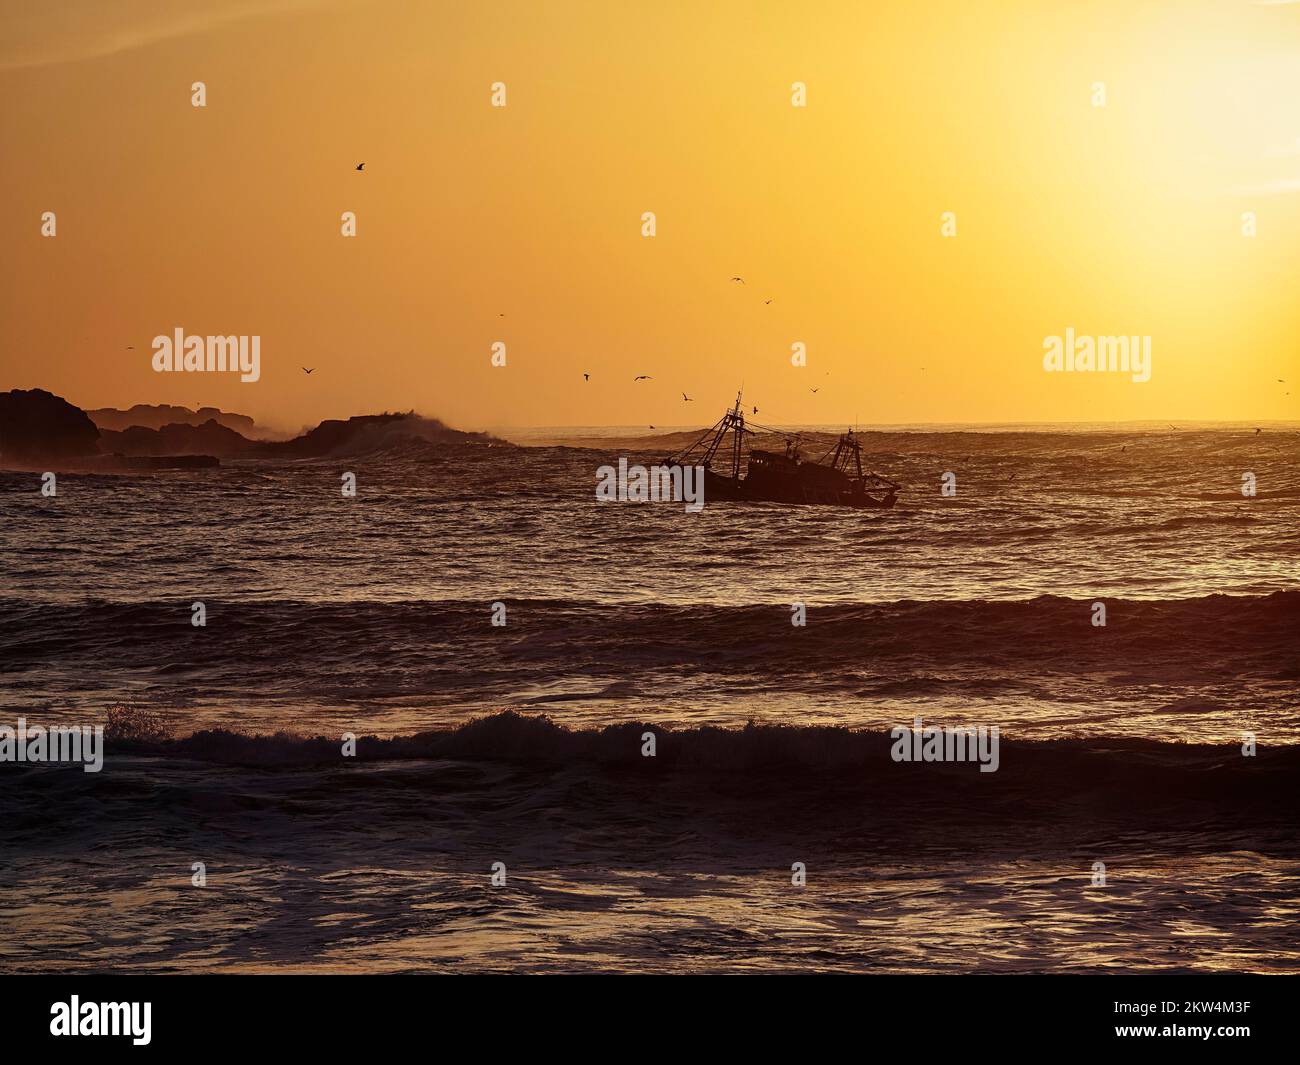 Bateau de pêche avec mouettes, coucher de soleil, contre-jour, Océan Atlantique, Essaouira, Marrakech-Safi, Maroc, Afrique Banque D'Images